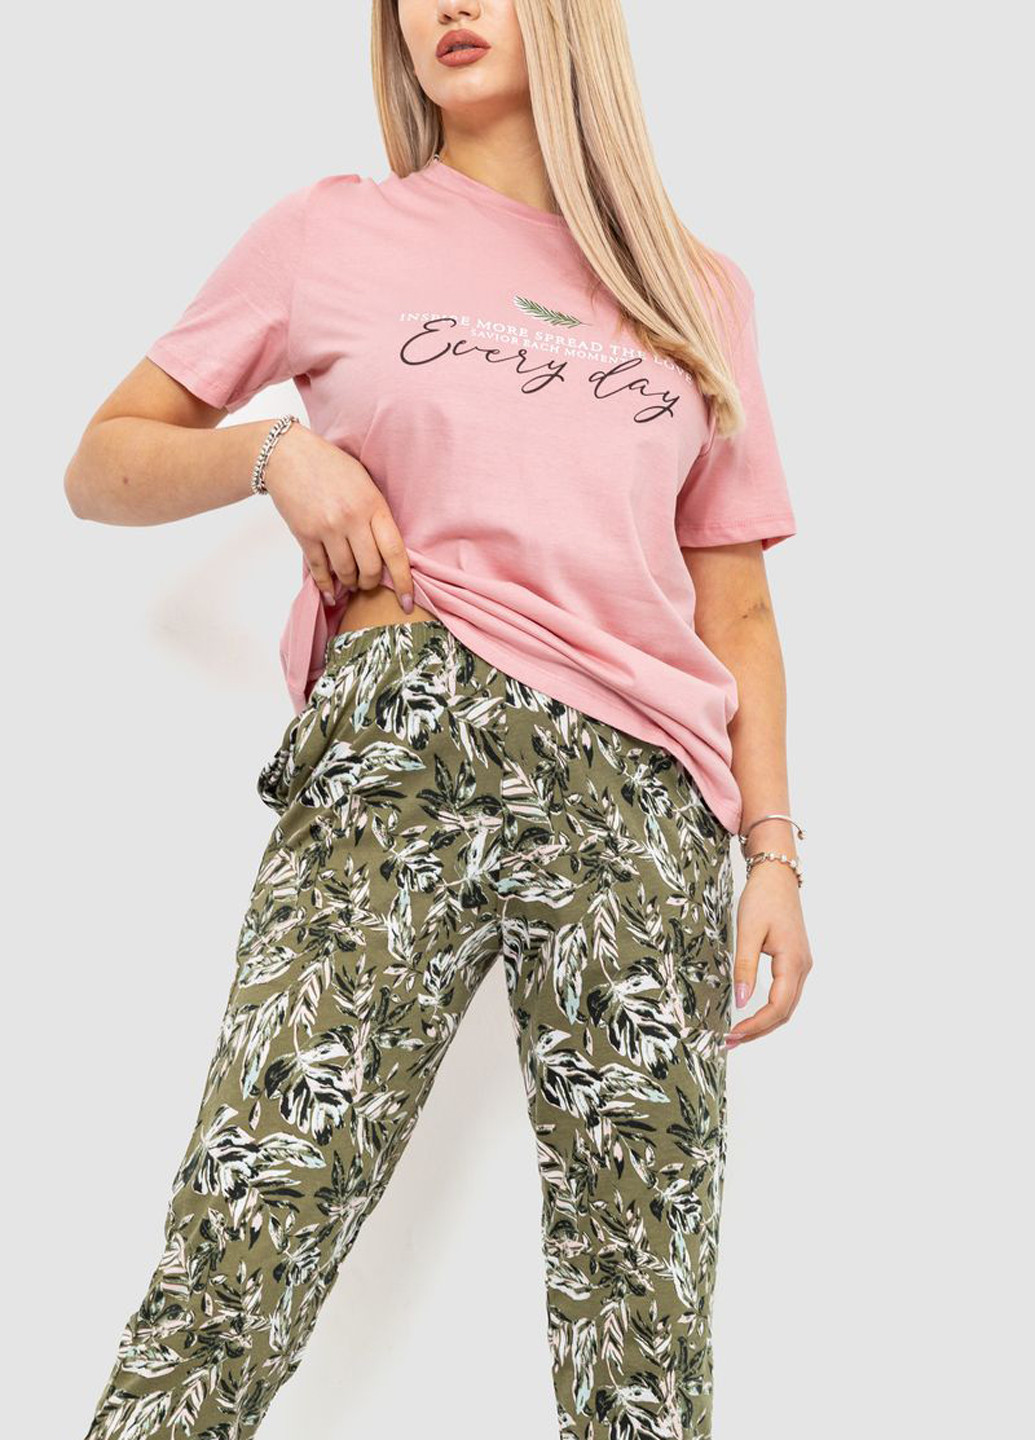 Комбинированная всесезон пижама (футболка, бриджи) футболка + бриджи Ager